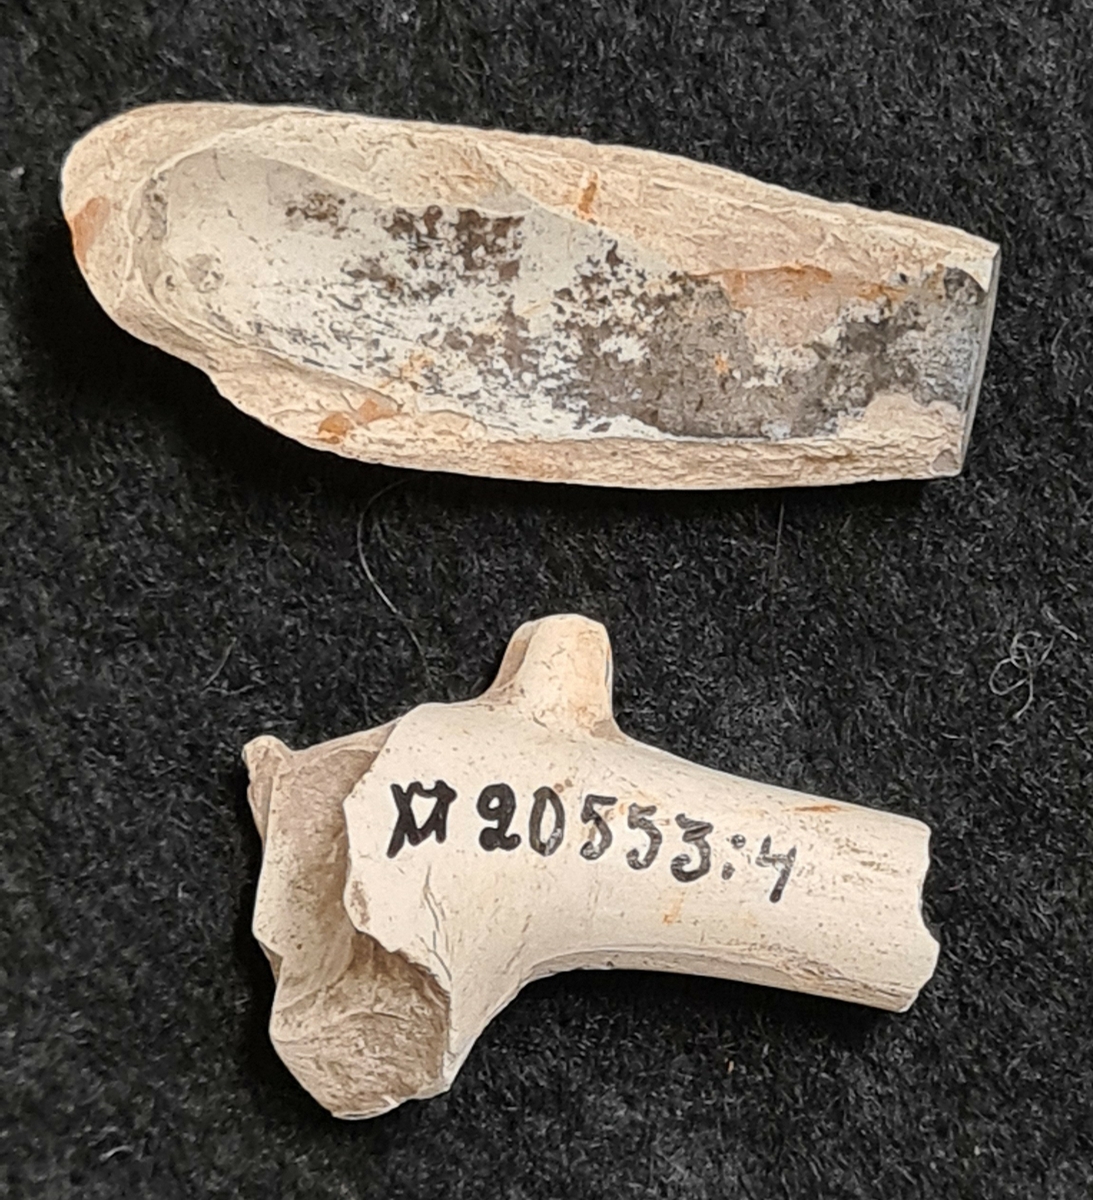 Lösfynd insamlade vid RAÄ:s fornminnesinventering i Dalsland 1987-88. 

Båda föremålen är fragment av piphuvudet, varav det ena med övergång till skaft.